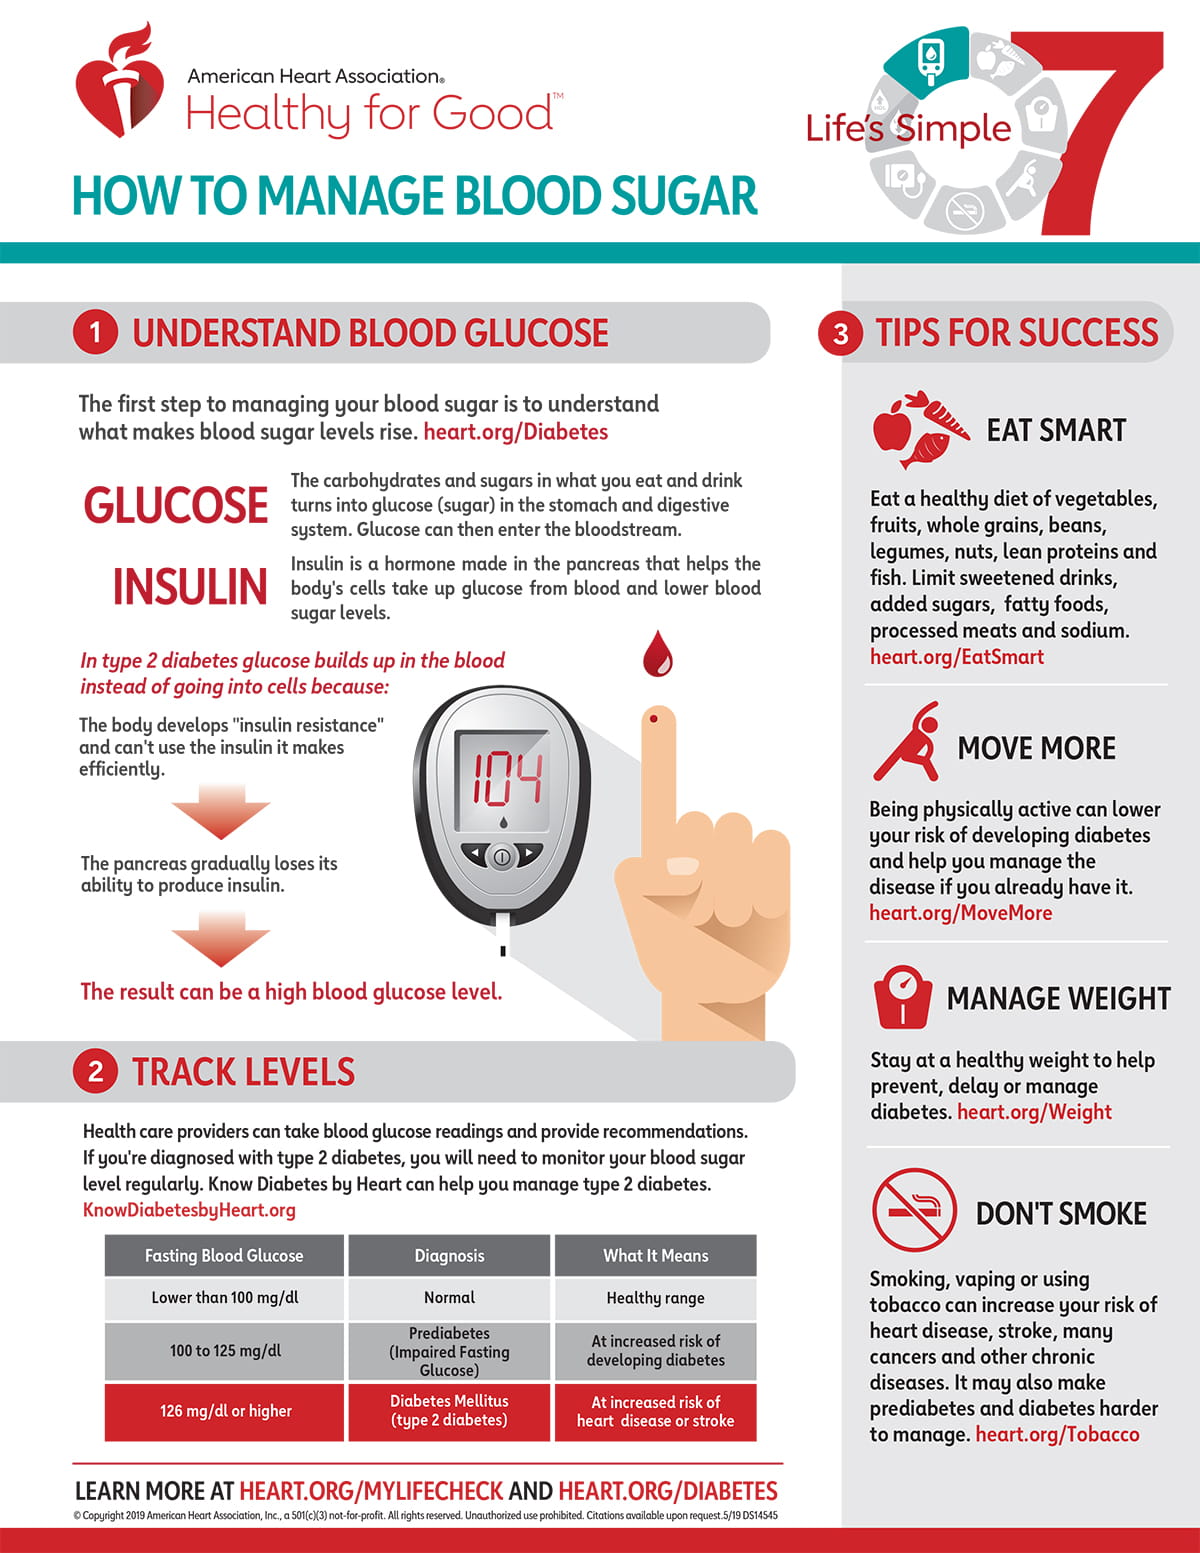 diabetes mellitus normal range blood sugar